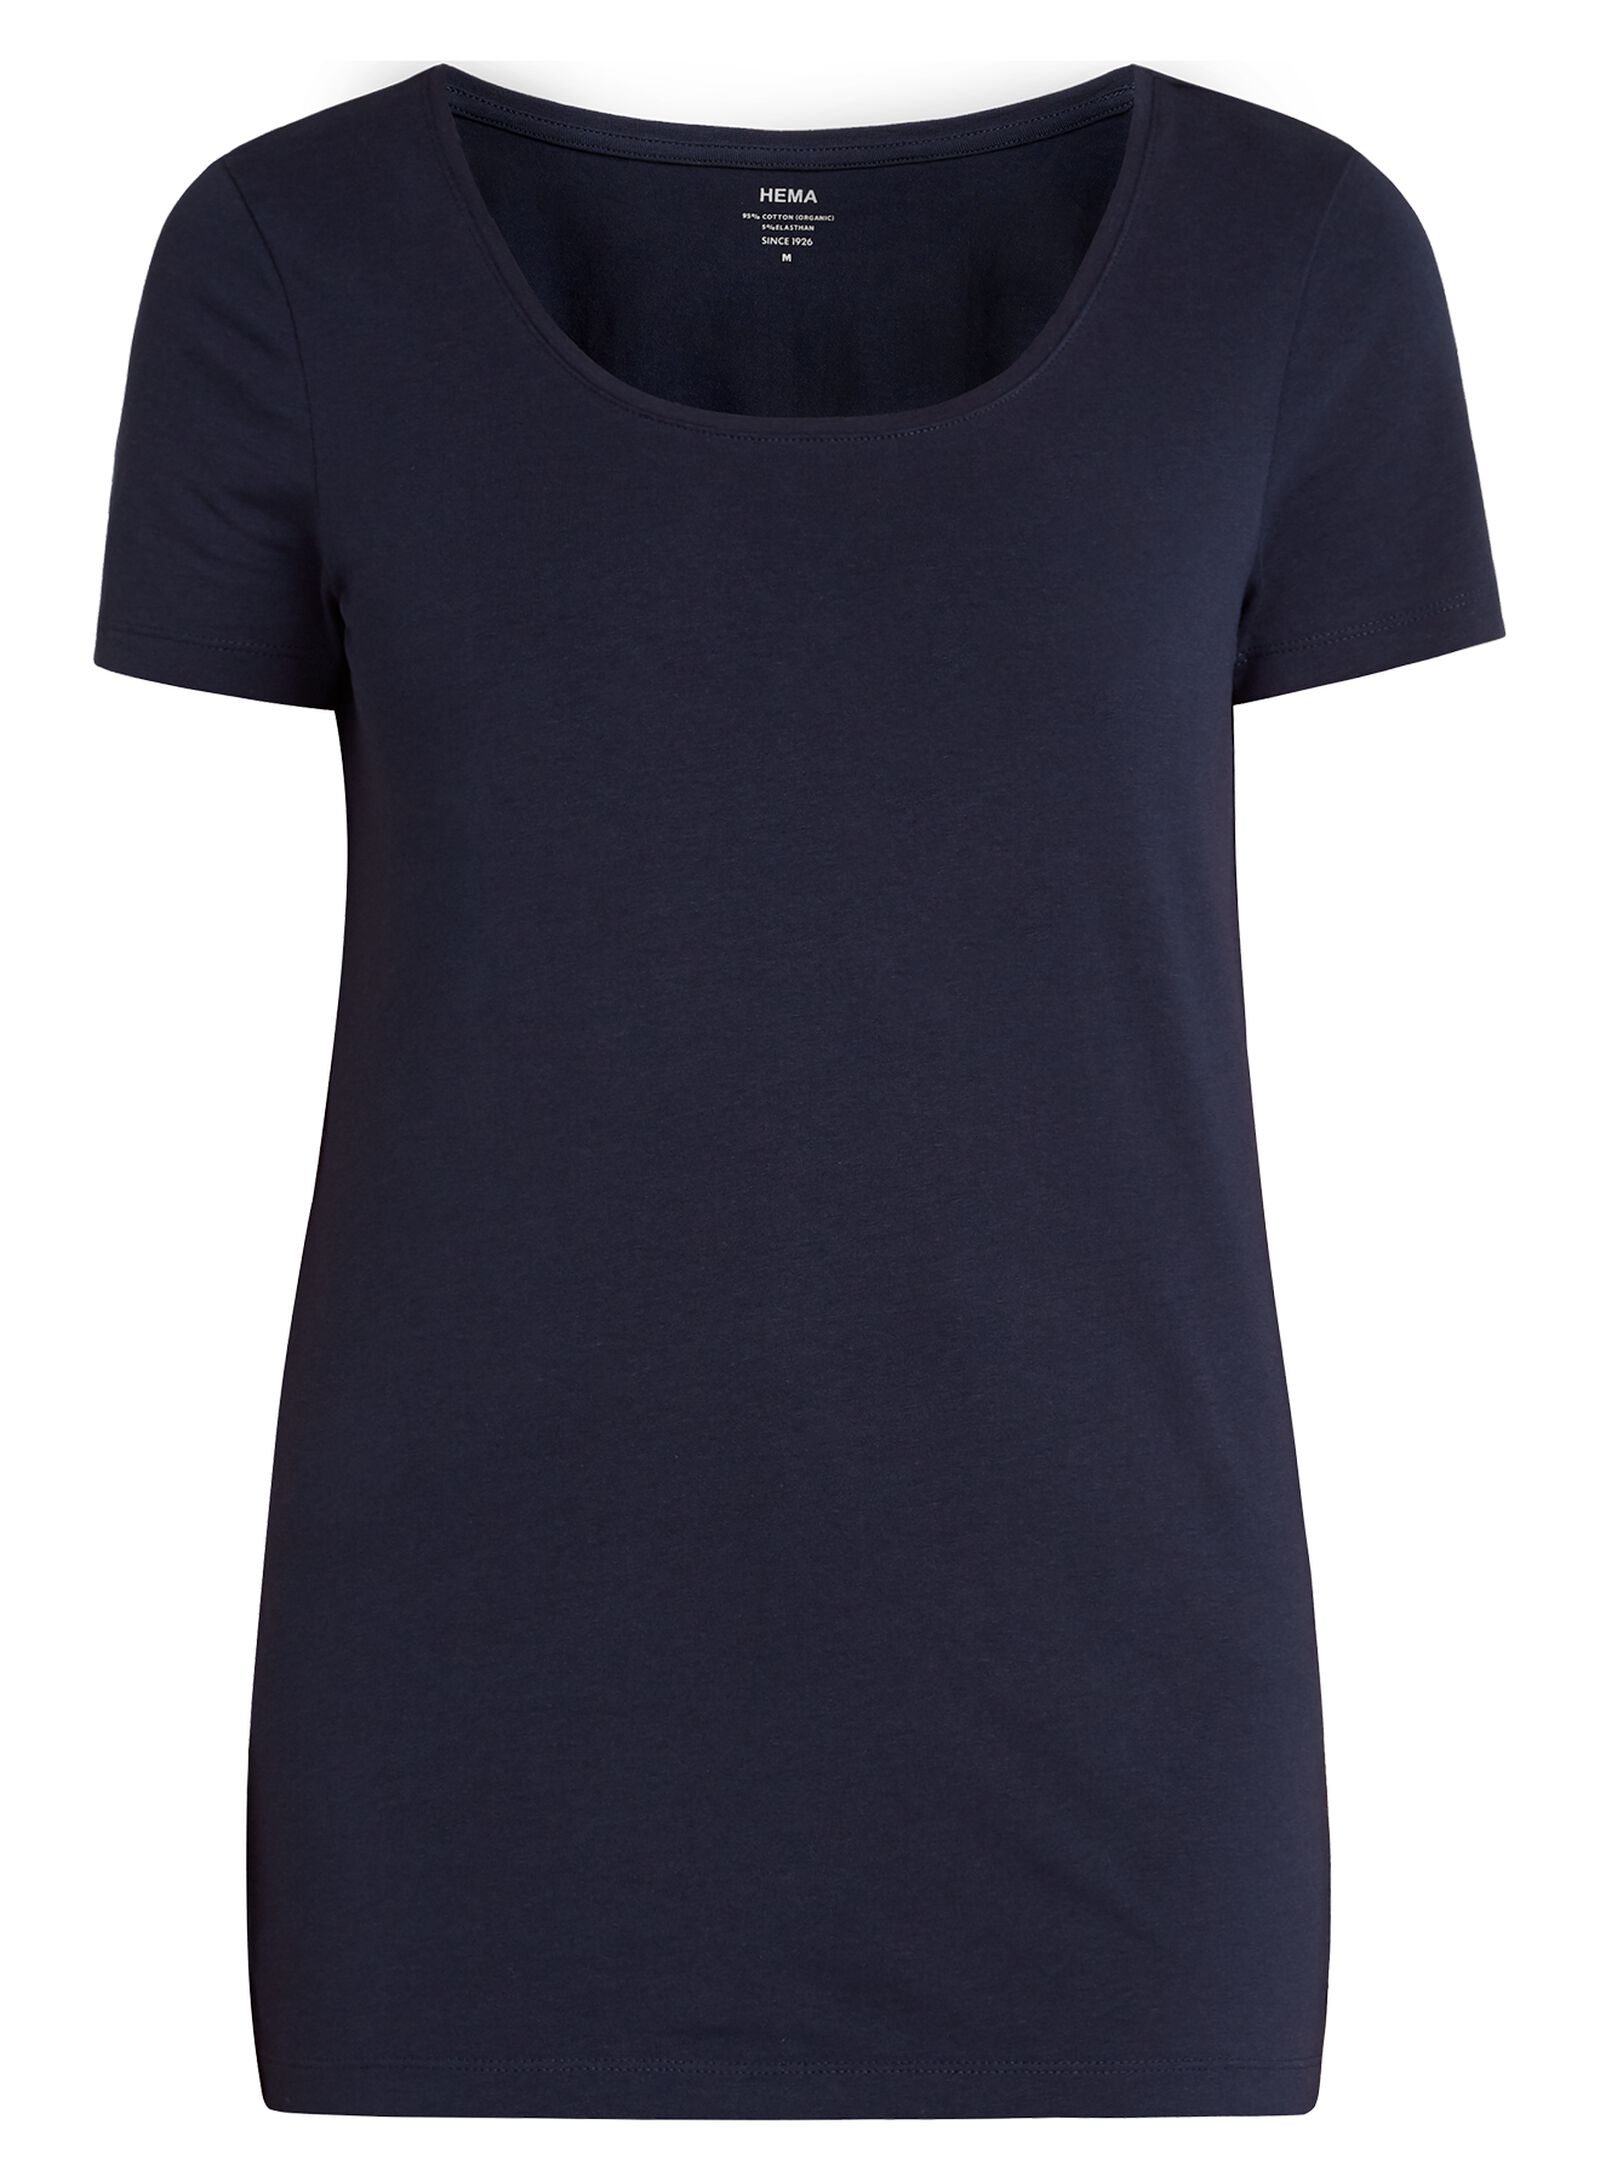 Image of HEMA Dames T-shirt Donkerblauw (donkerblauw)